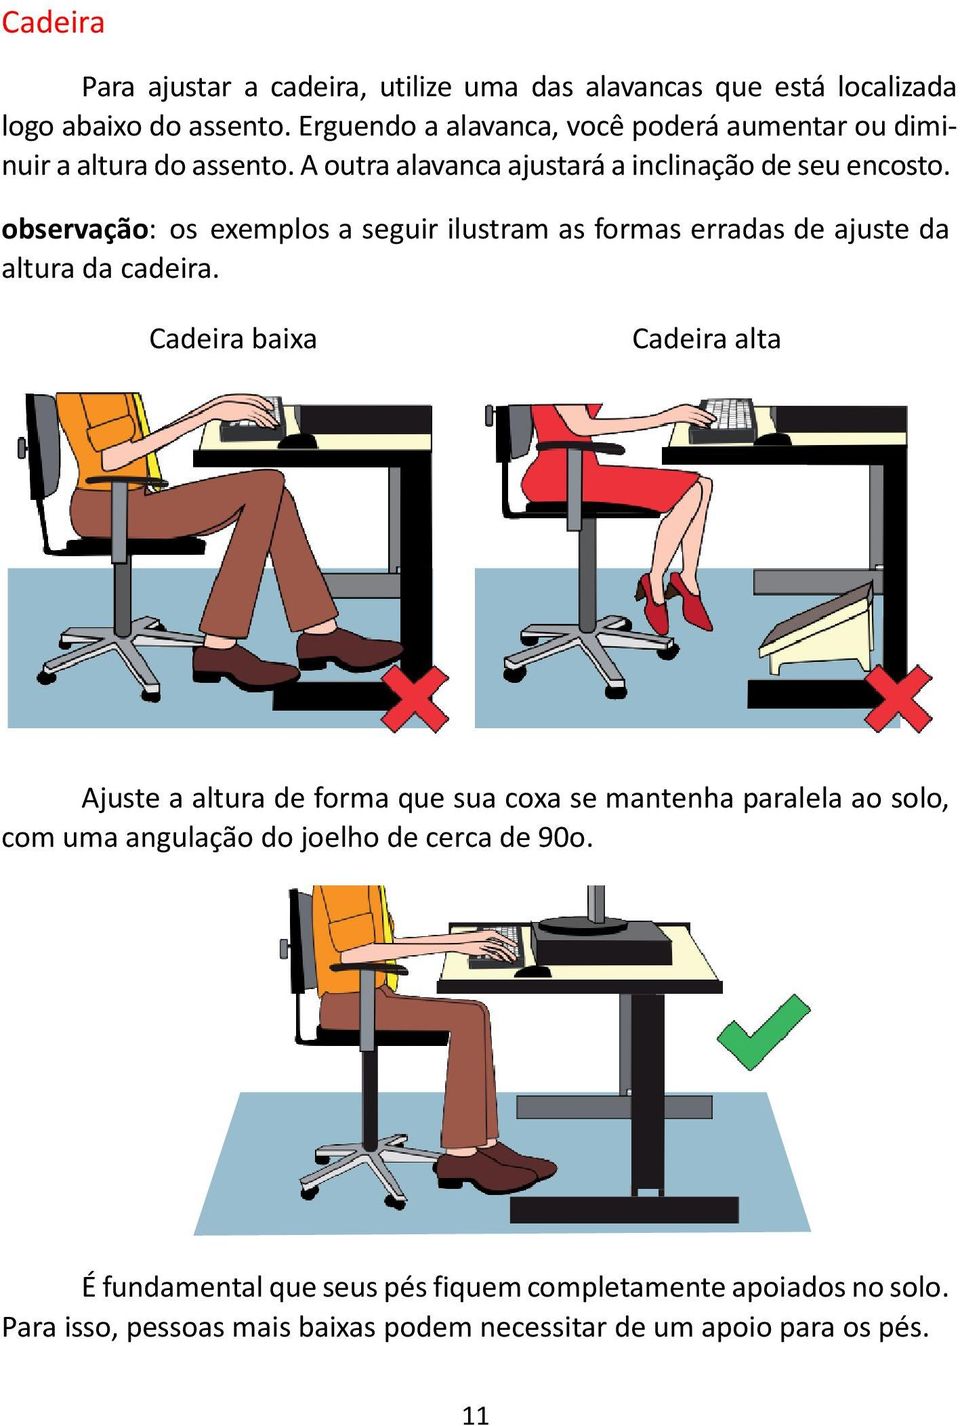 observação: os exemplos a seguir ilustram as formas erradas de ajuste da altura da cadeira.